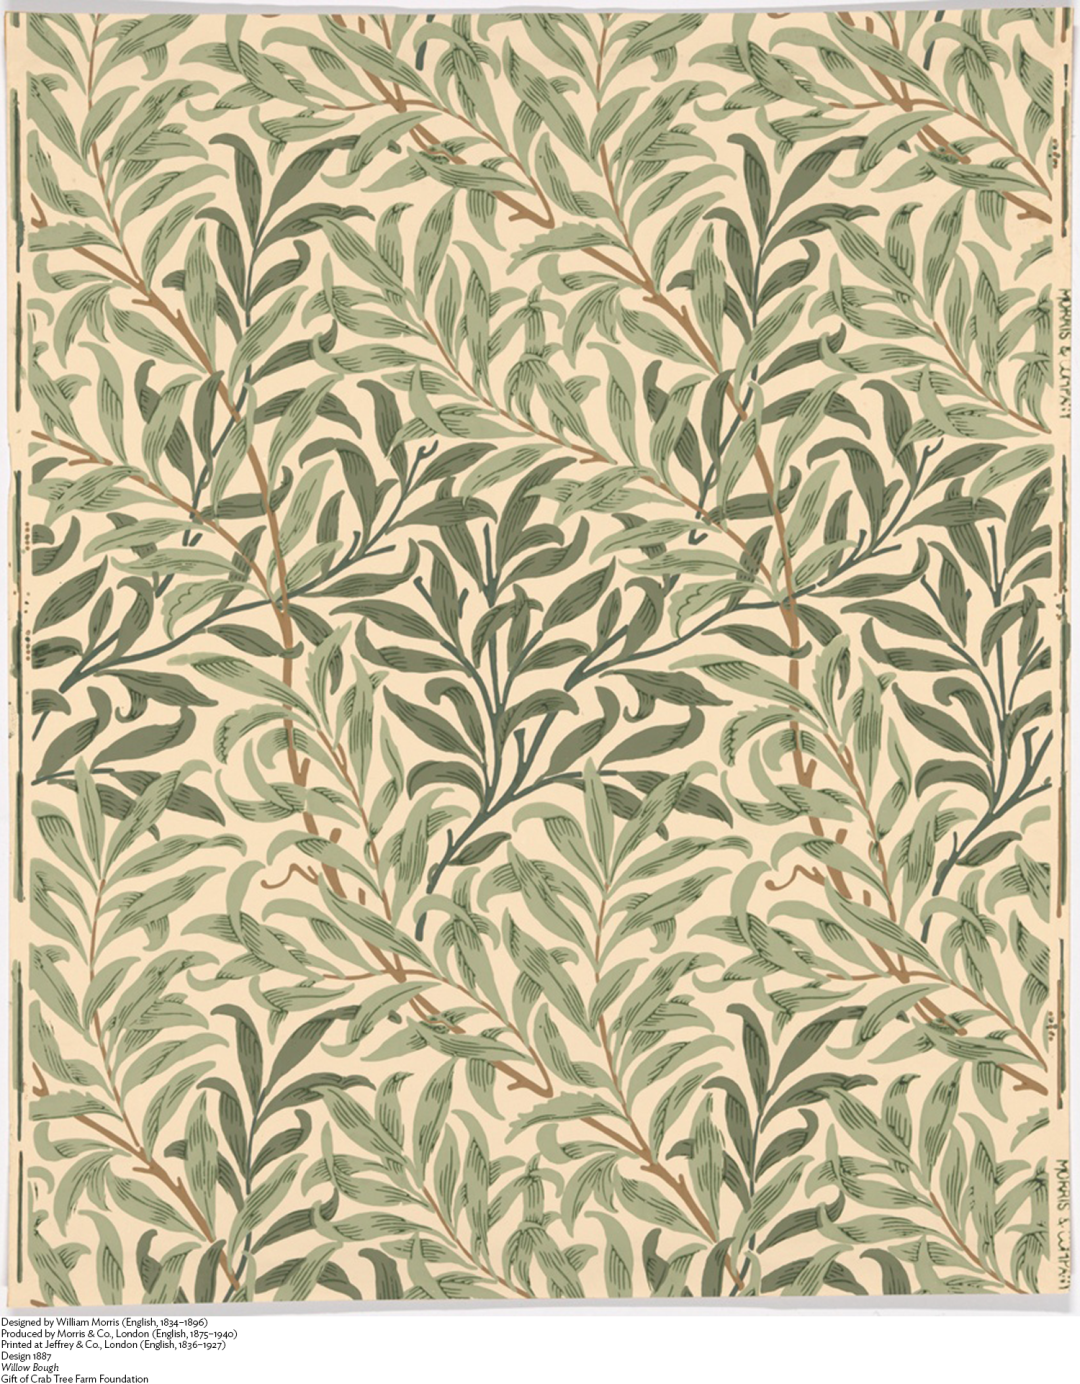 《柳树枝条》，威廉·莫里斯，1887年，芝加哥艺术博物馆，编号：Obj: 249076